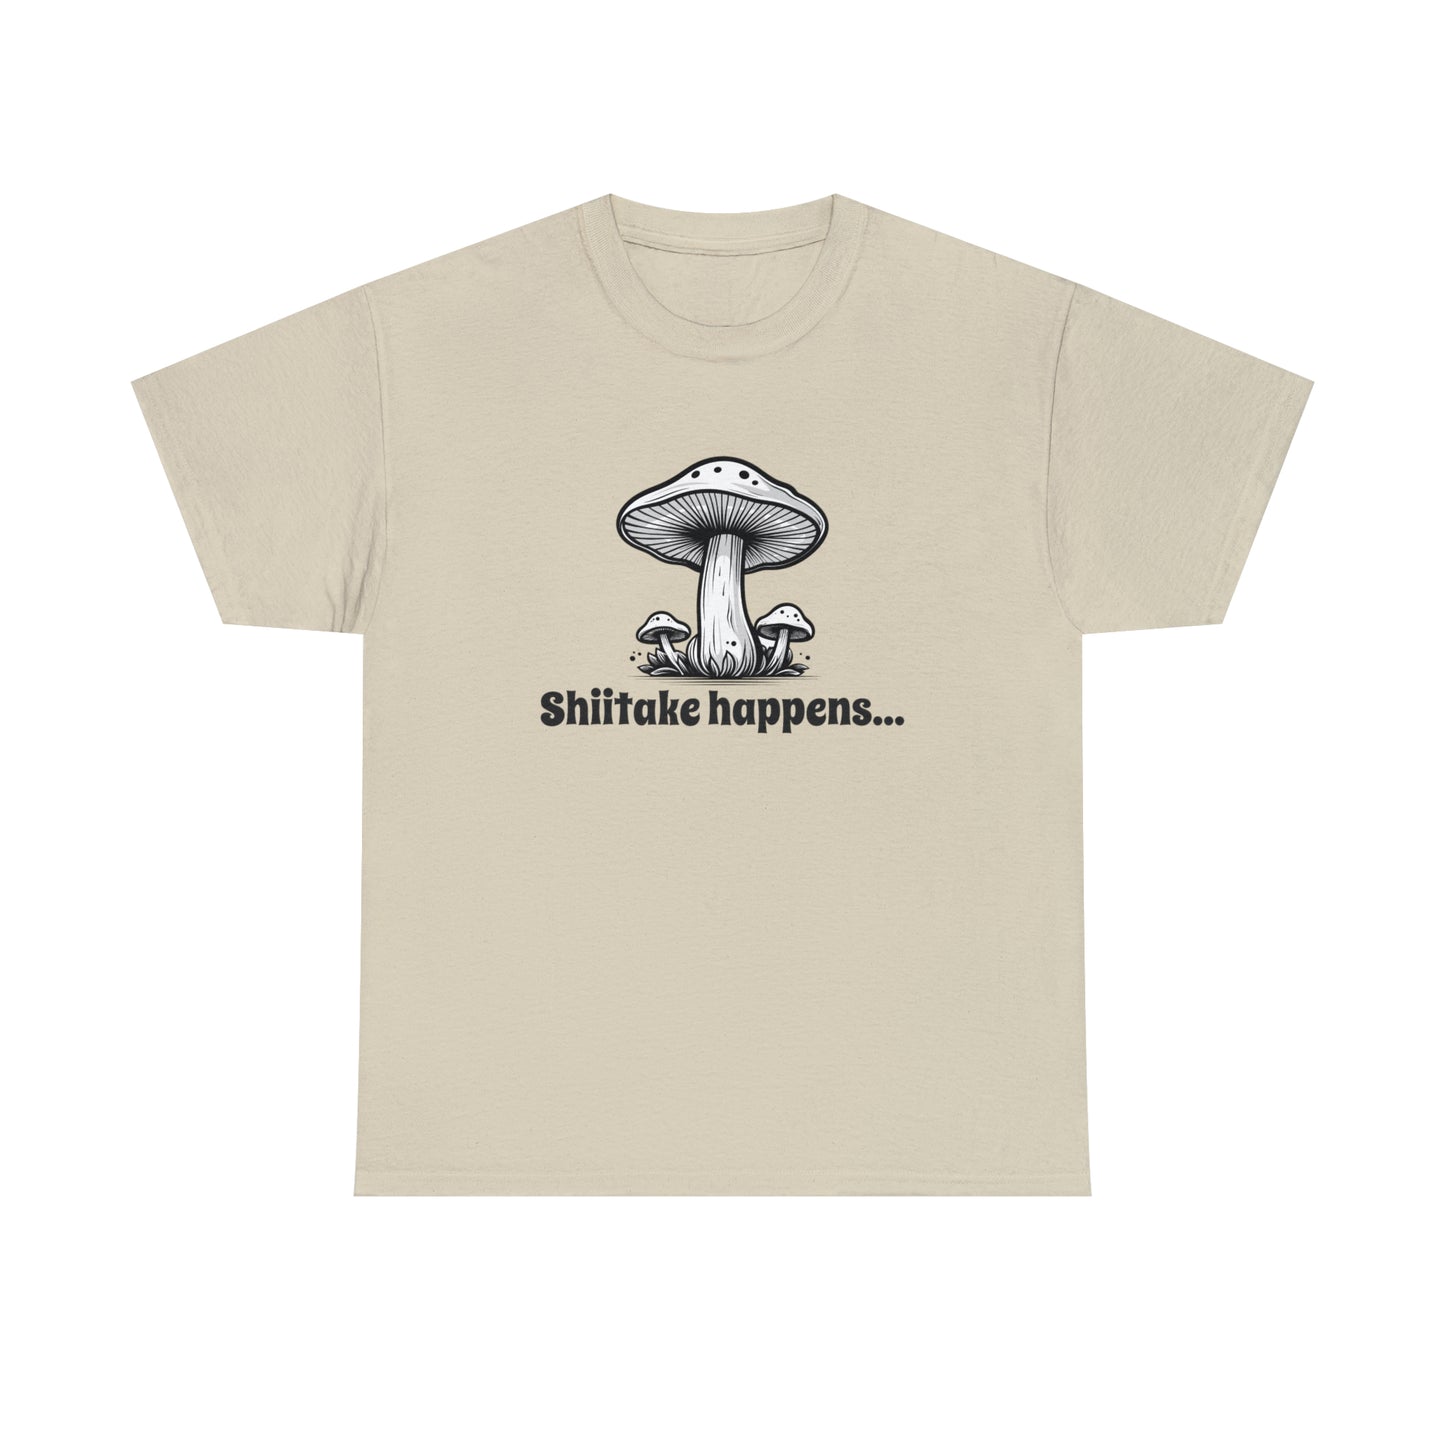 Shiitake Happens T-Shirt For Mushroom T Shirt For Funny Cook TShirt For Fungi Gift